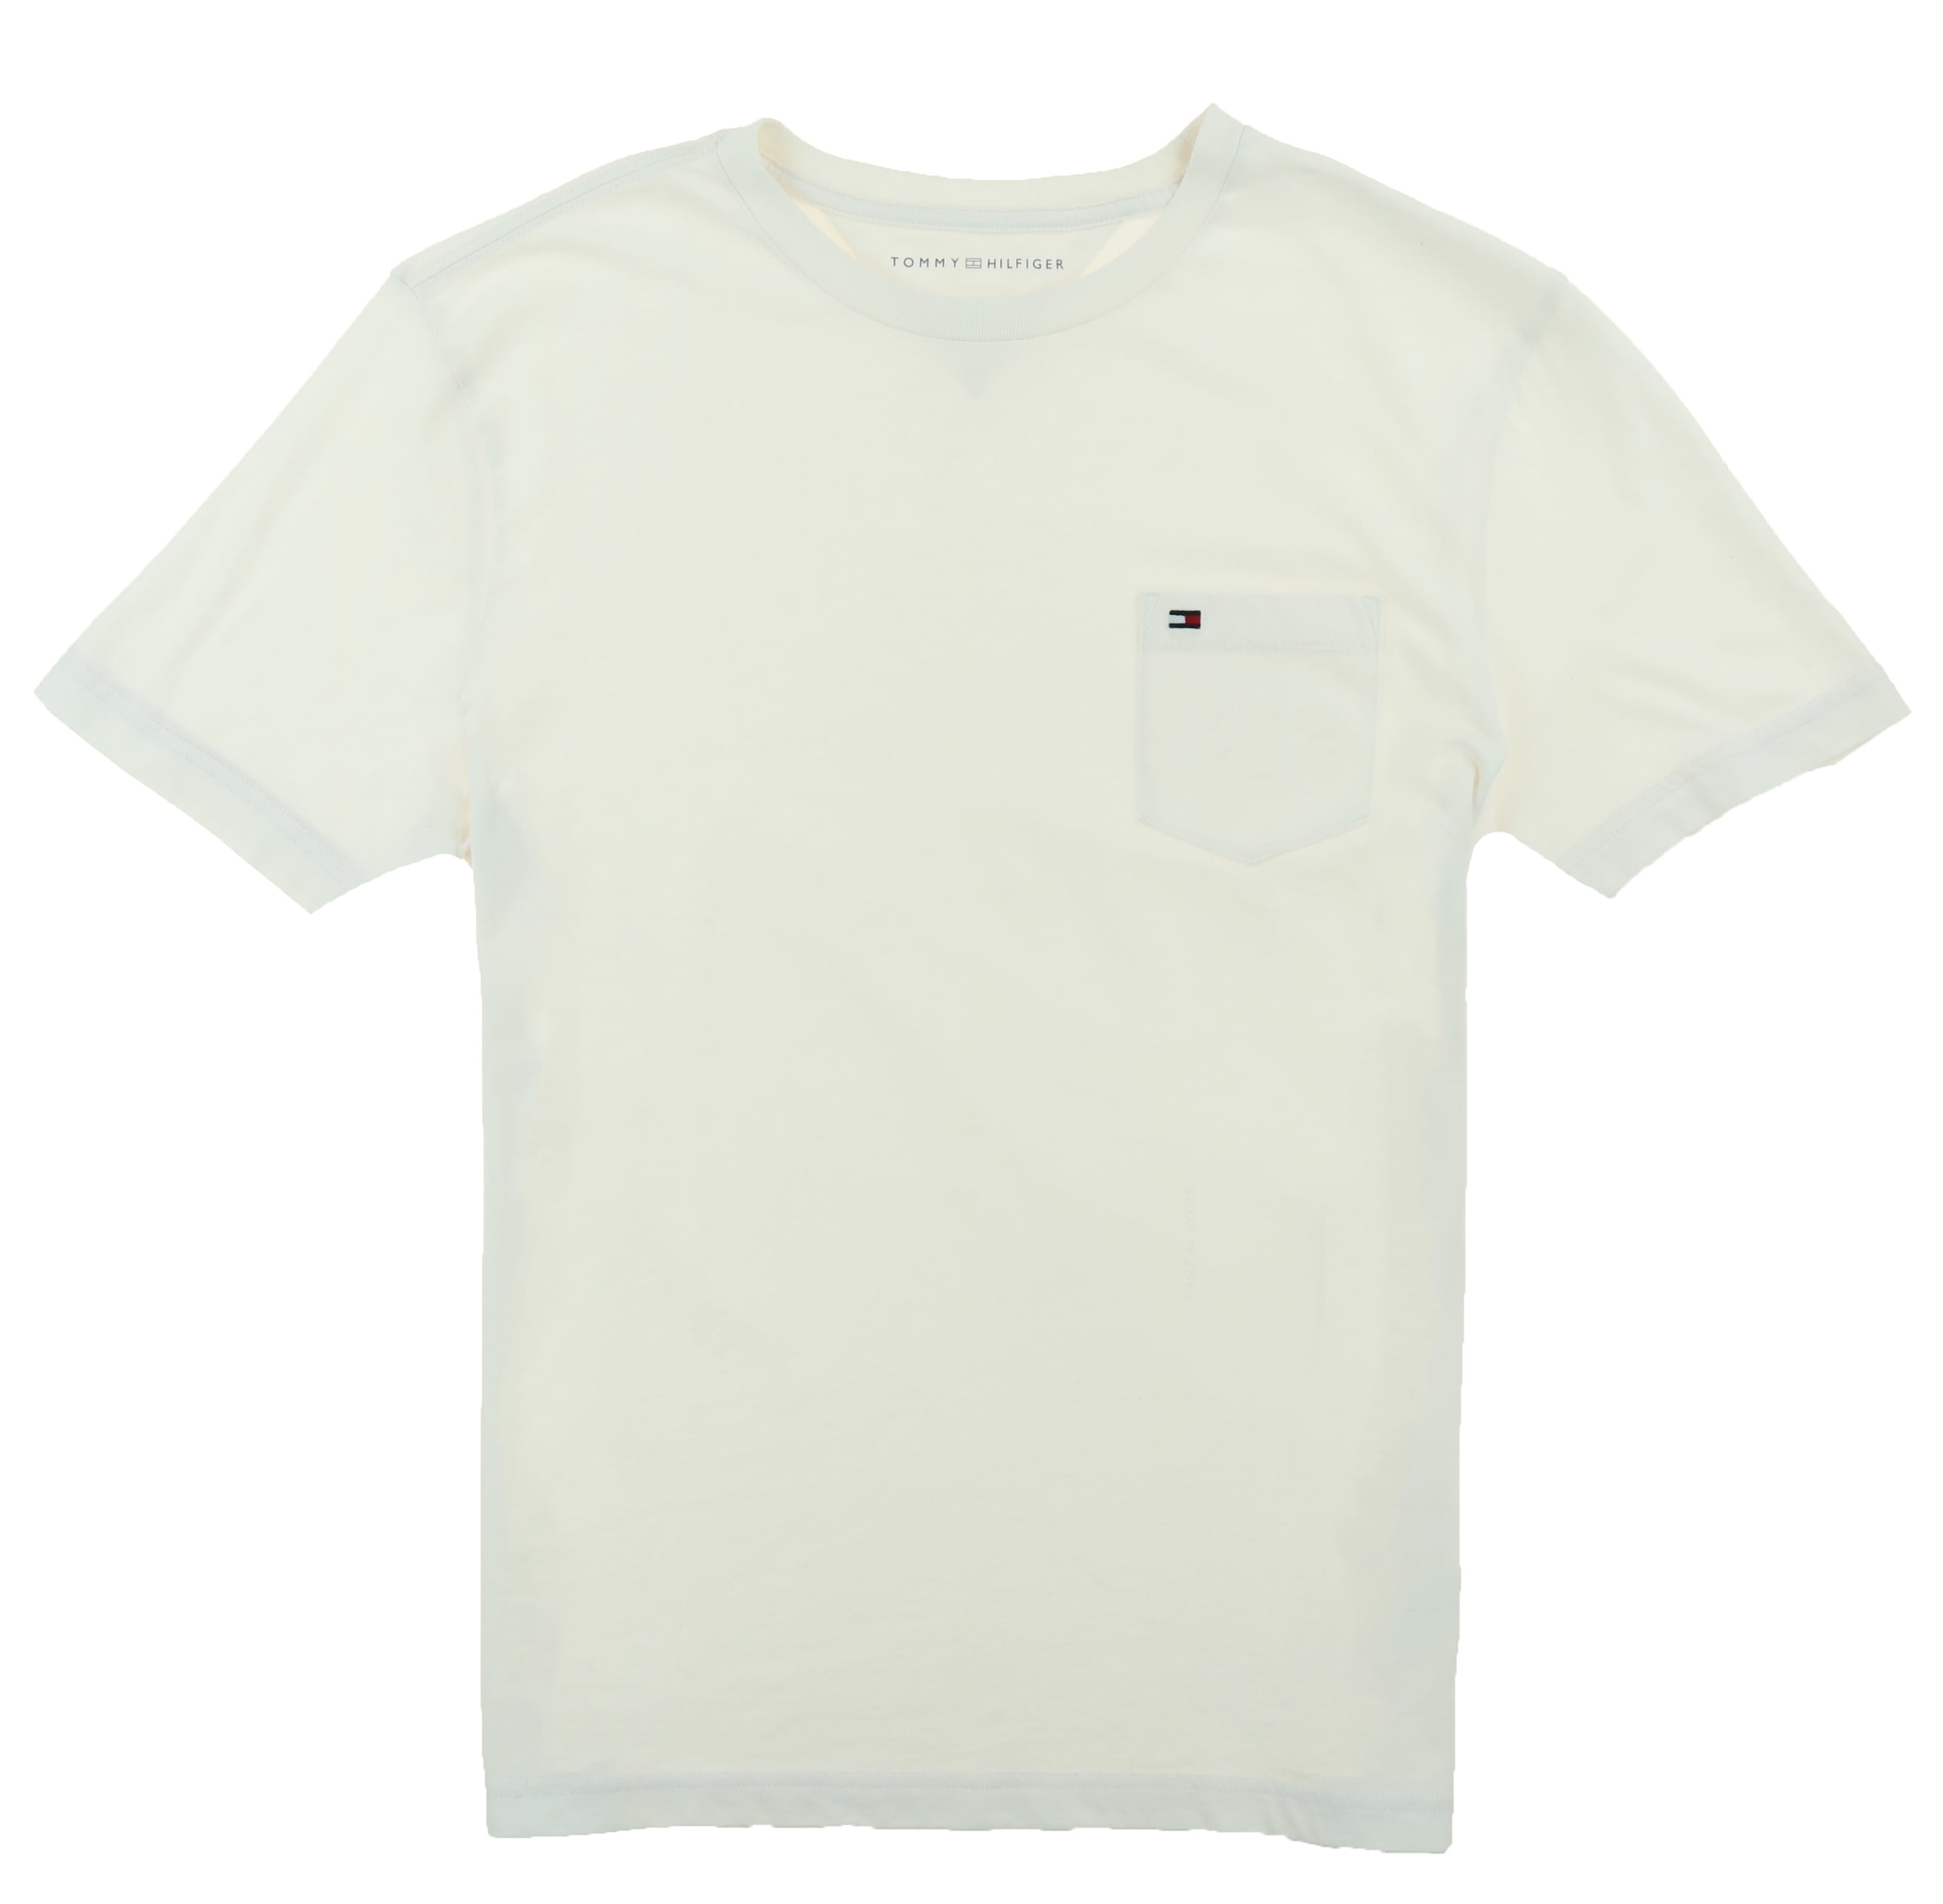 frivillig omvendt Limited Tommy Hilfiger Mens Crew Neck Pocket T-shirt (Snow White, Large) -  Walmart.com